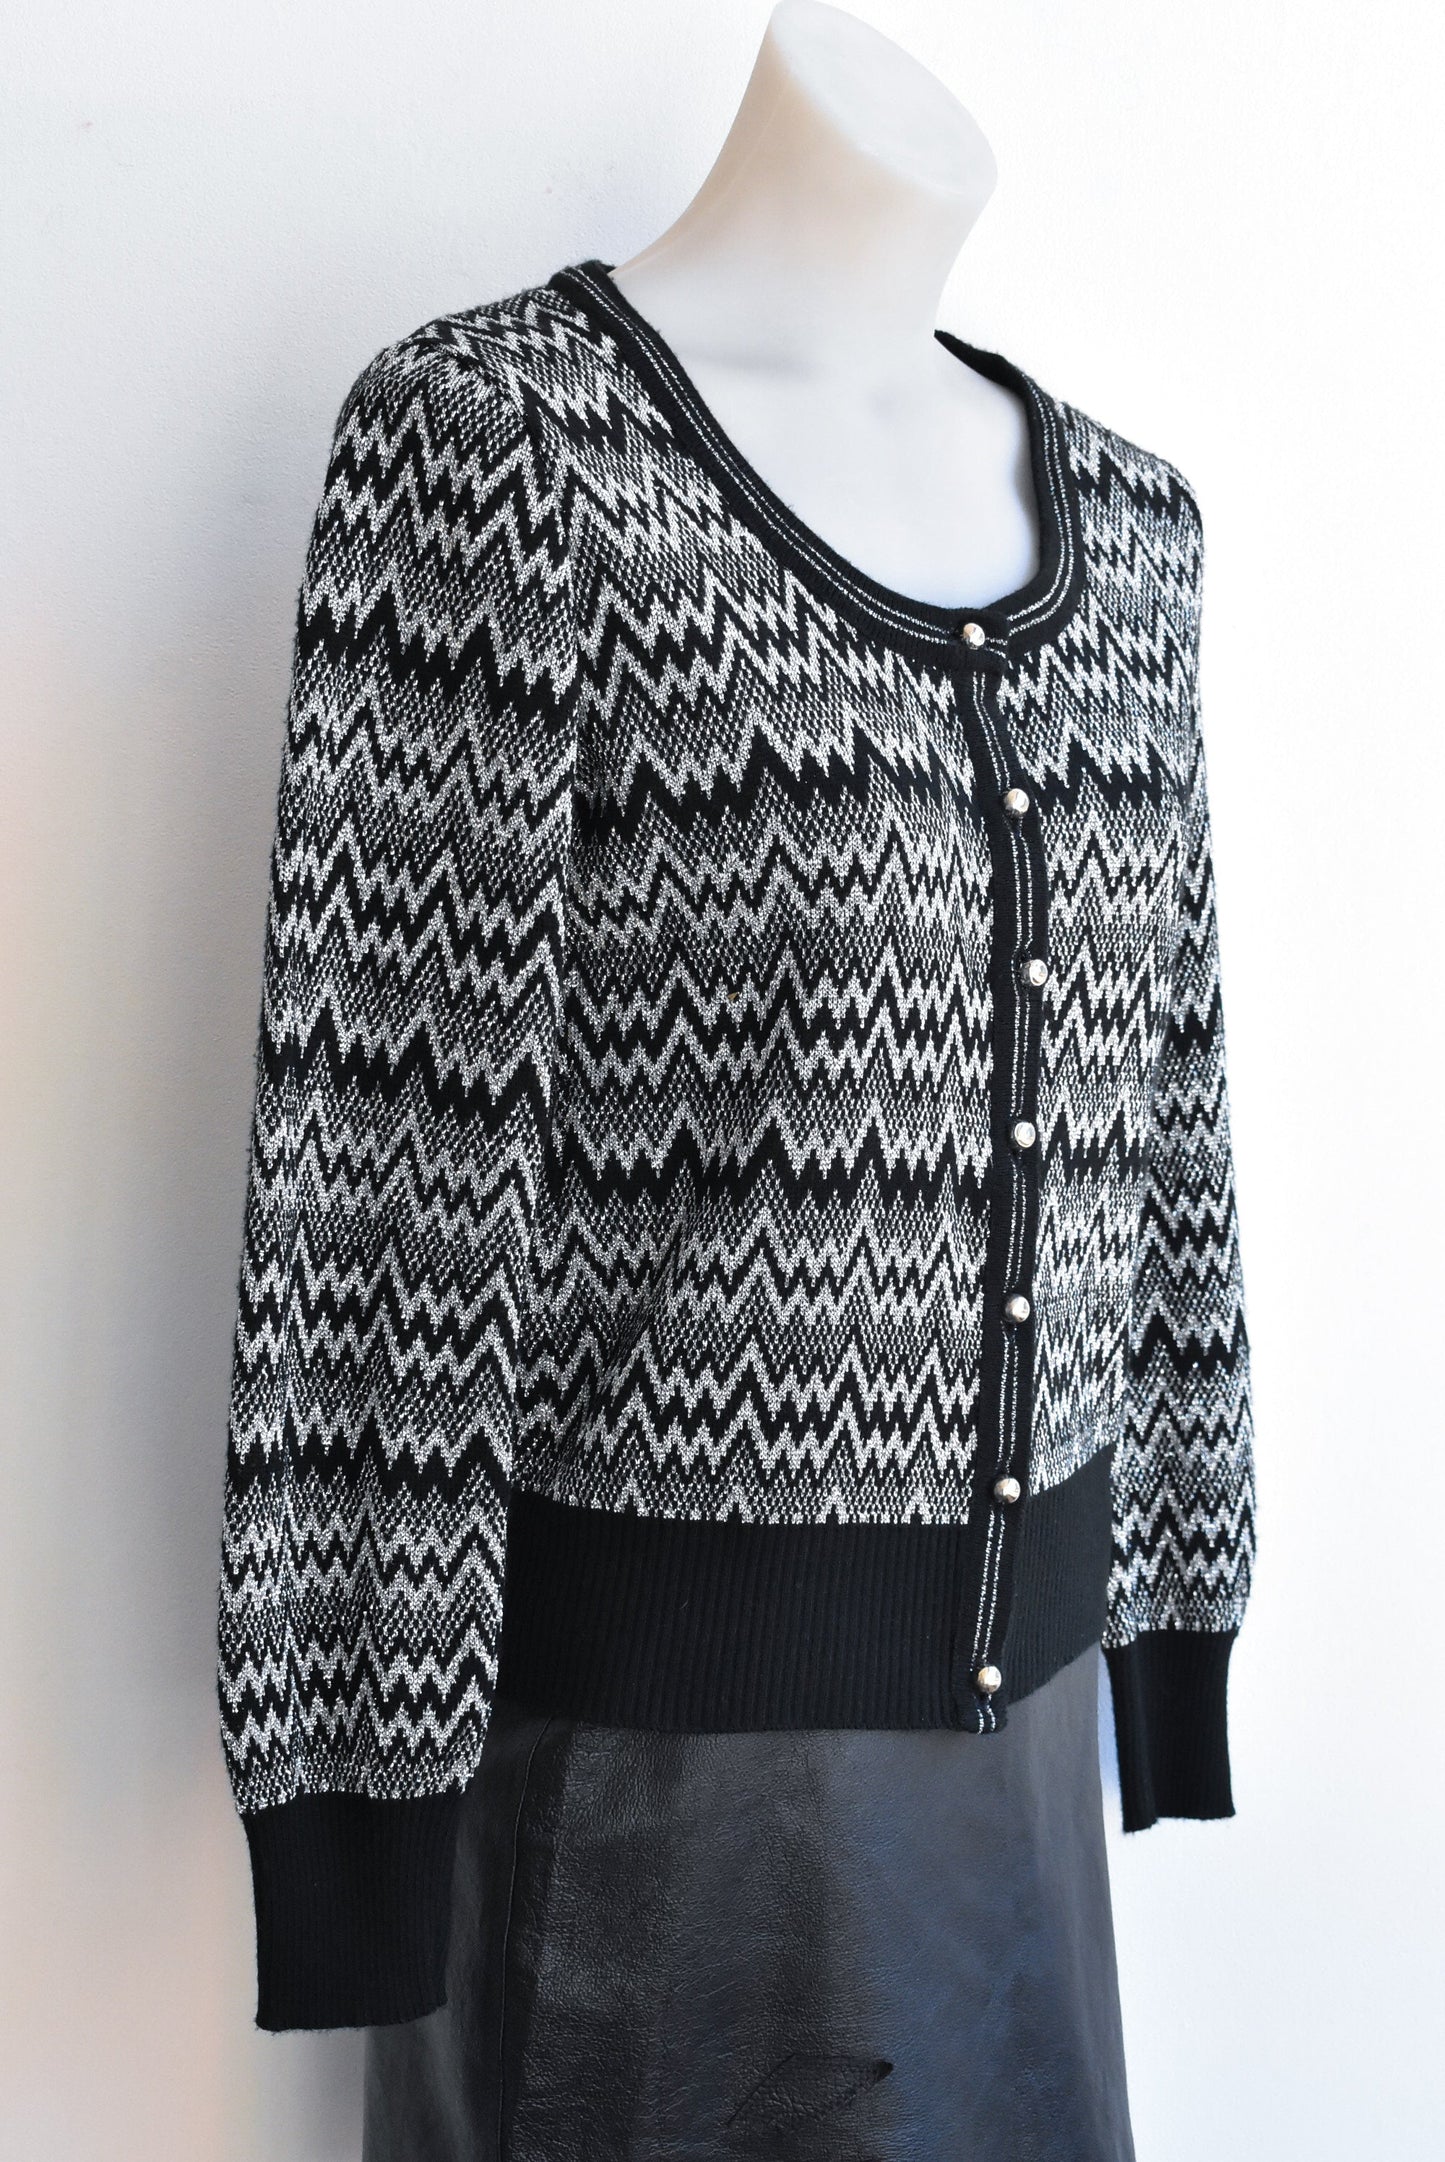 Retro Bonds black & silver lurex knit cardi, size XS